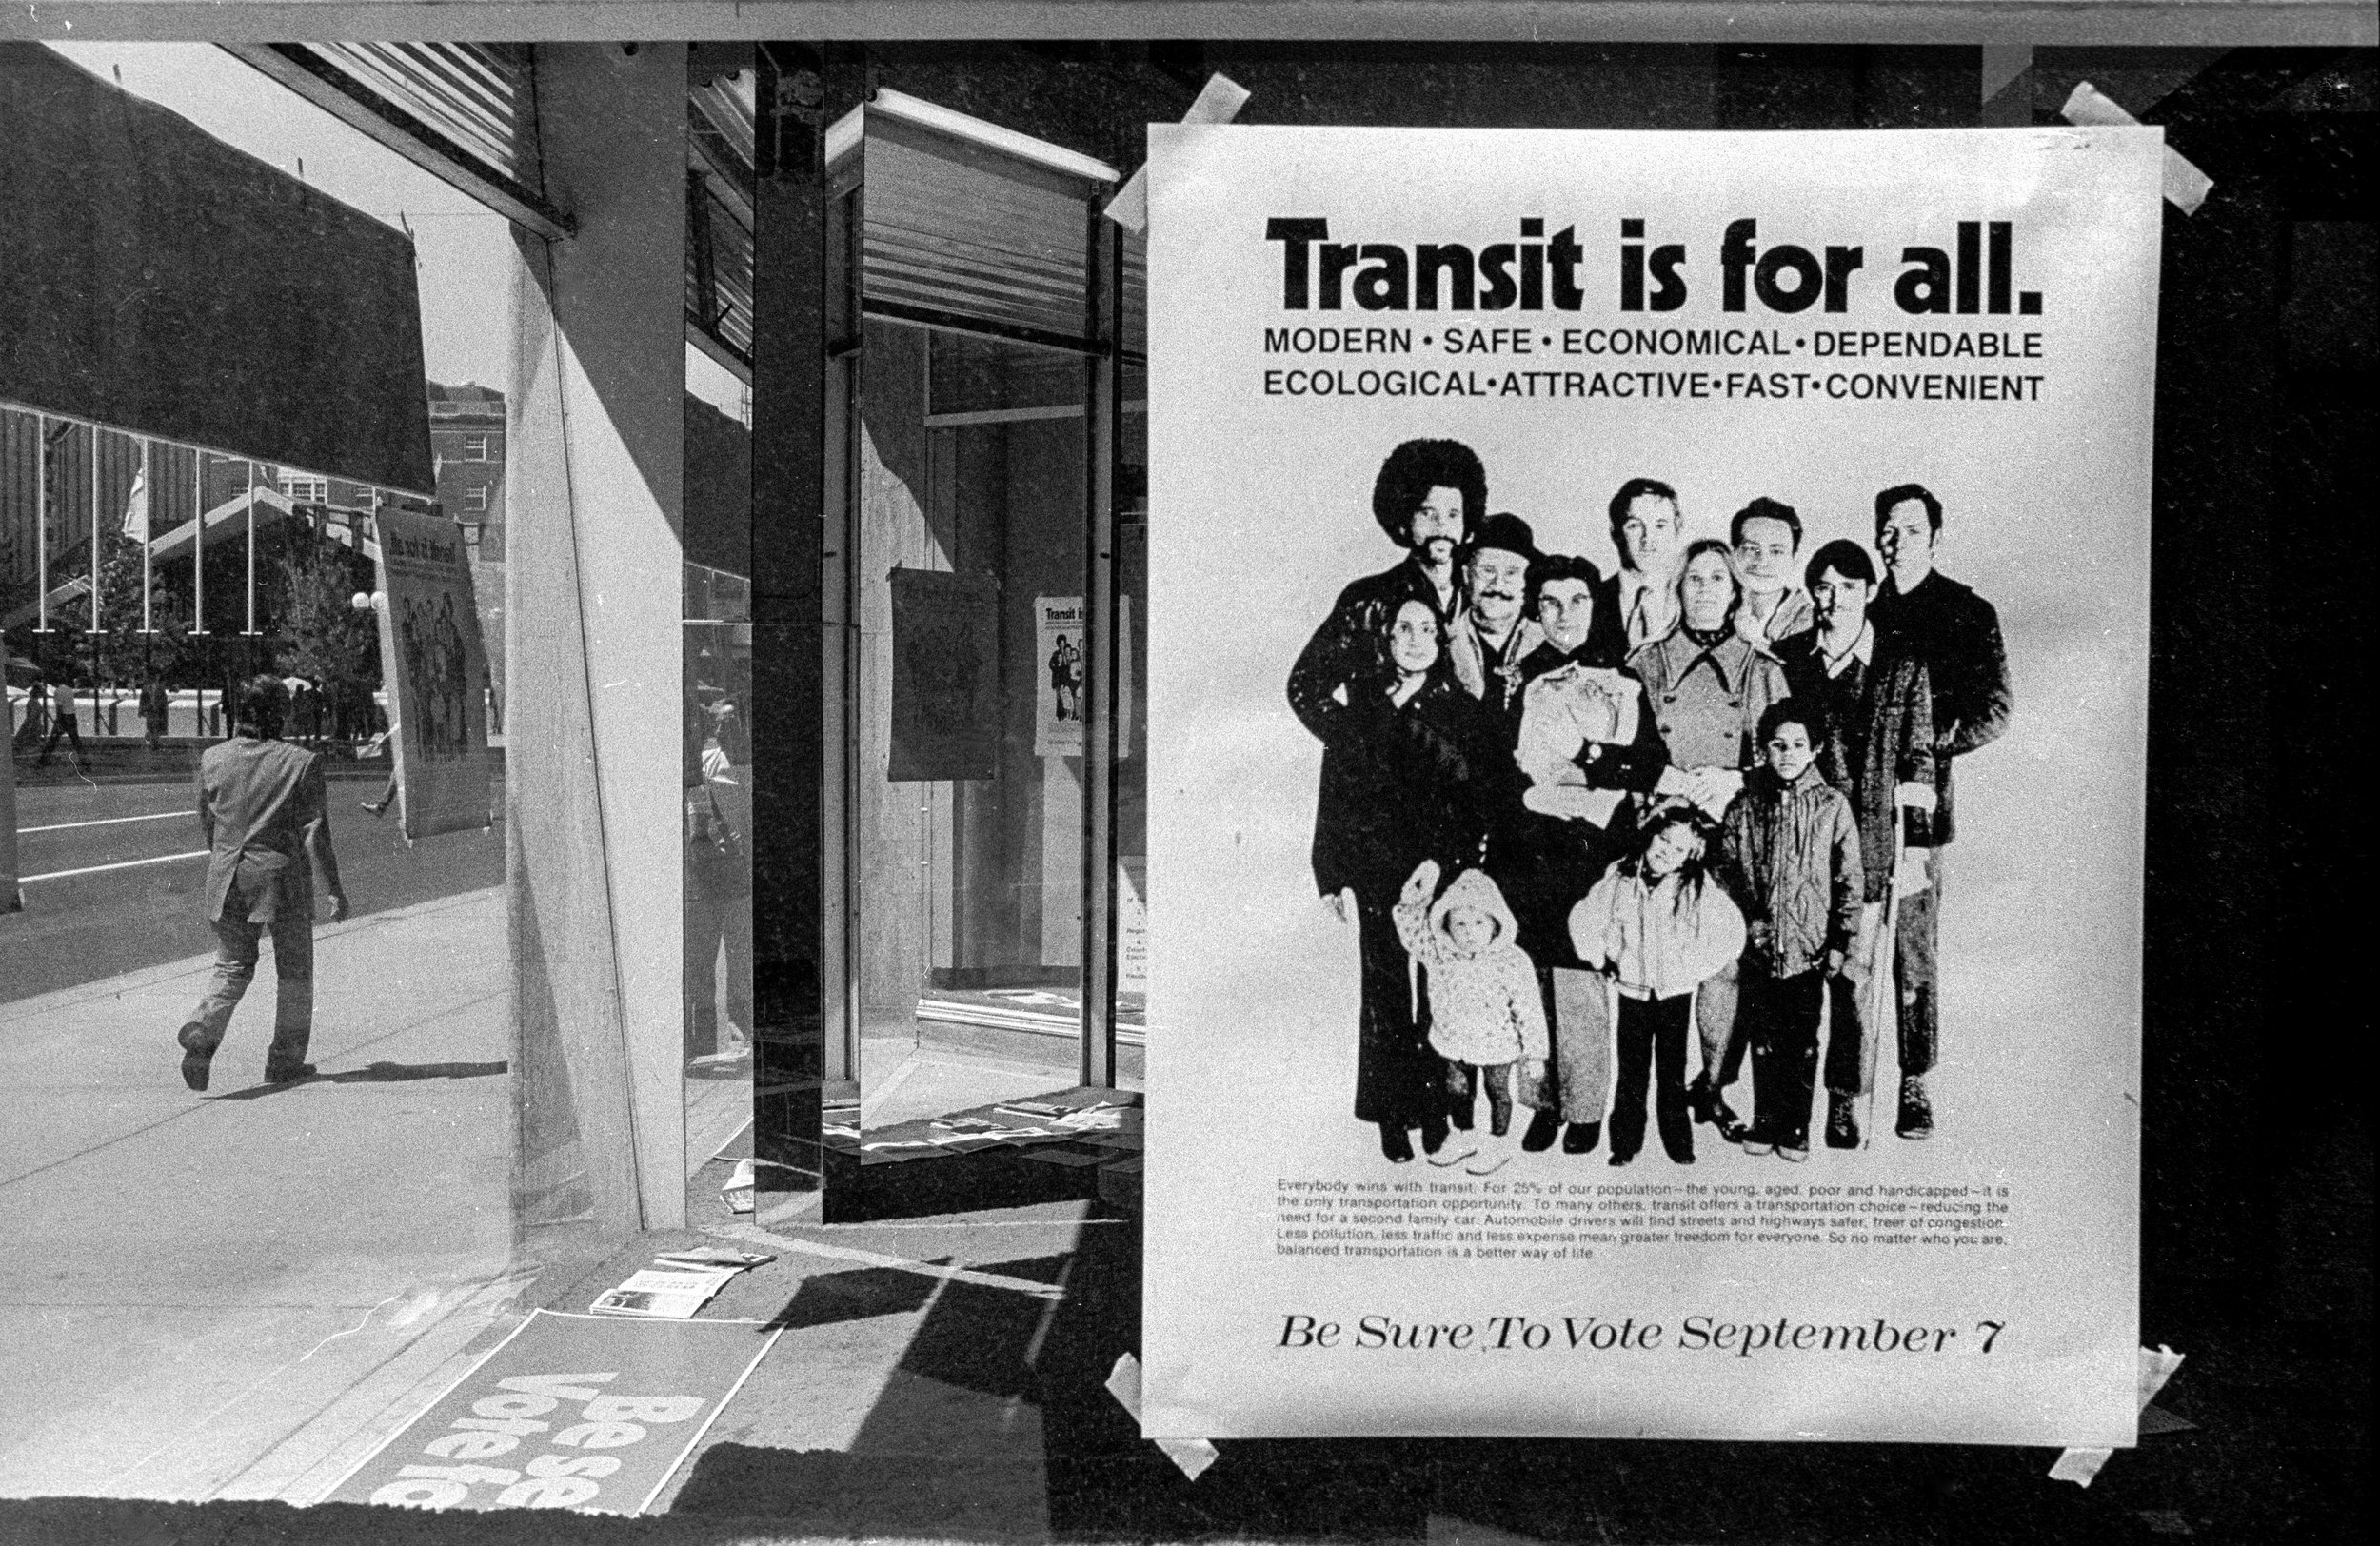   Transit Sign, Denver, CO 1972  